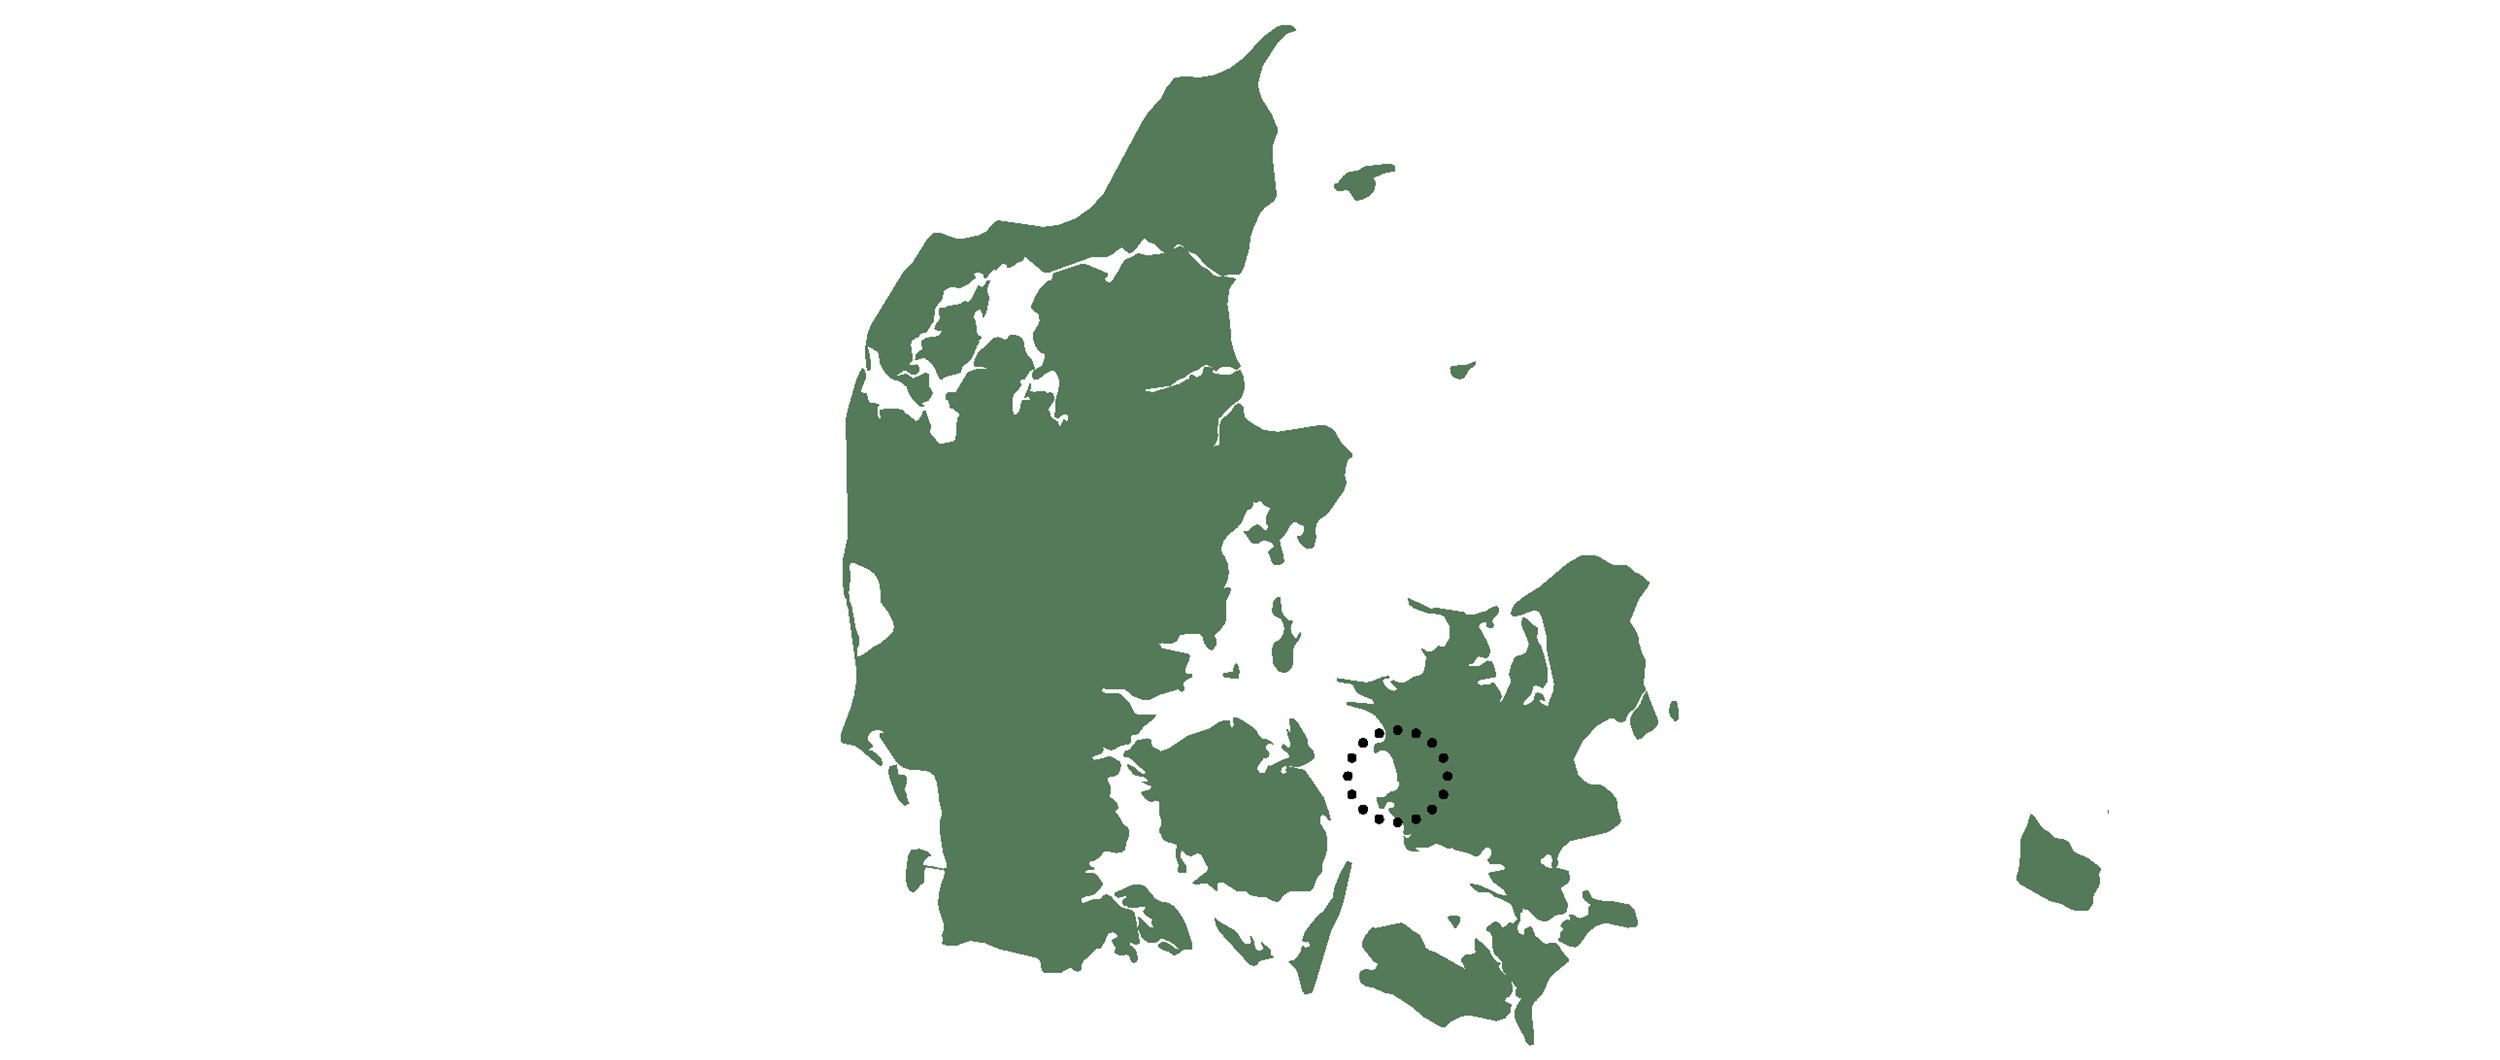 Projektet er beliggende i Slagelse på sydvest Sjælland.